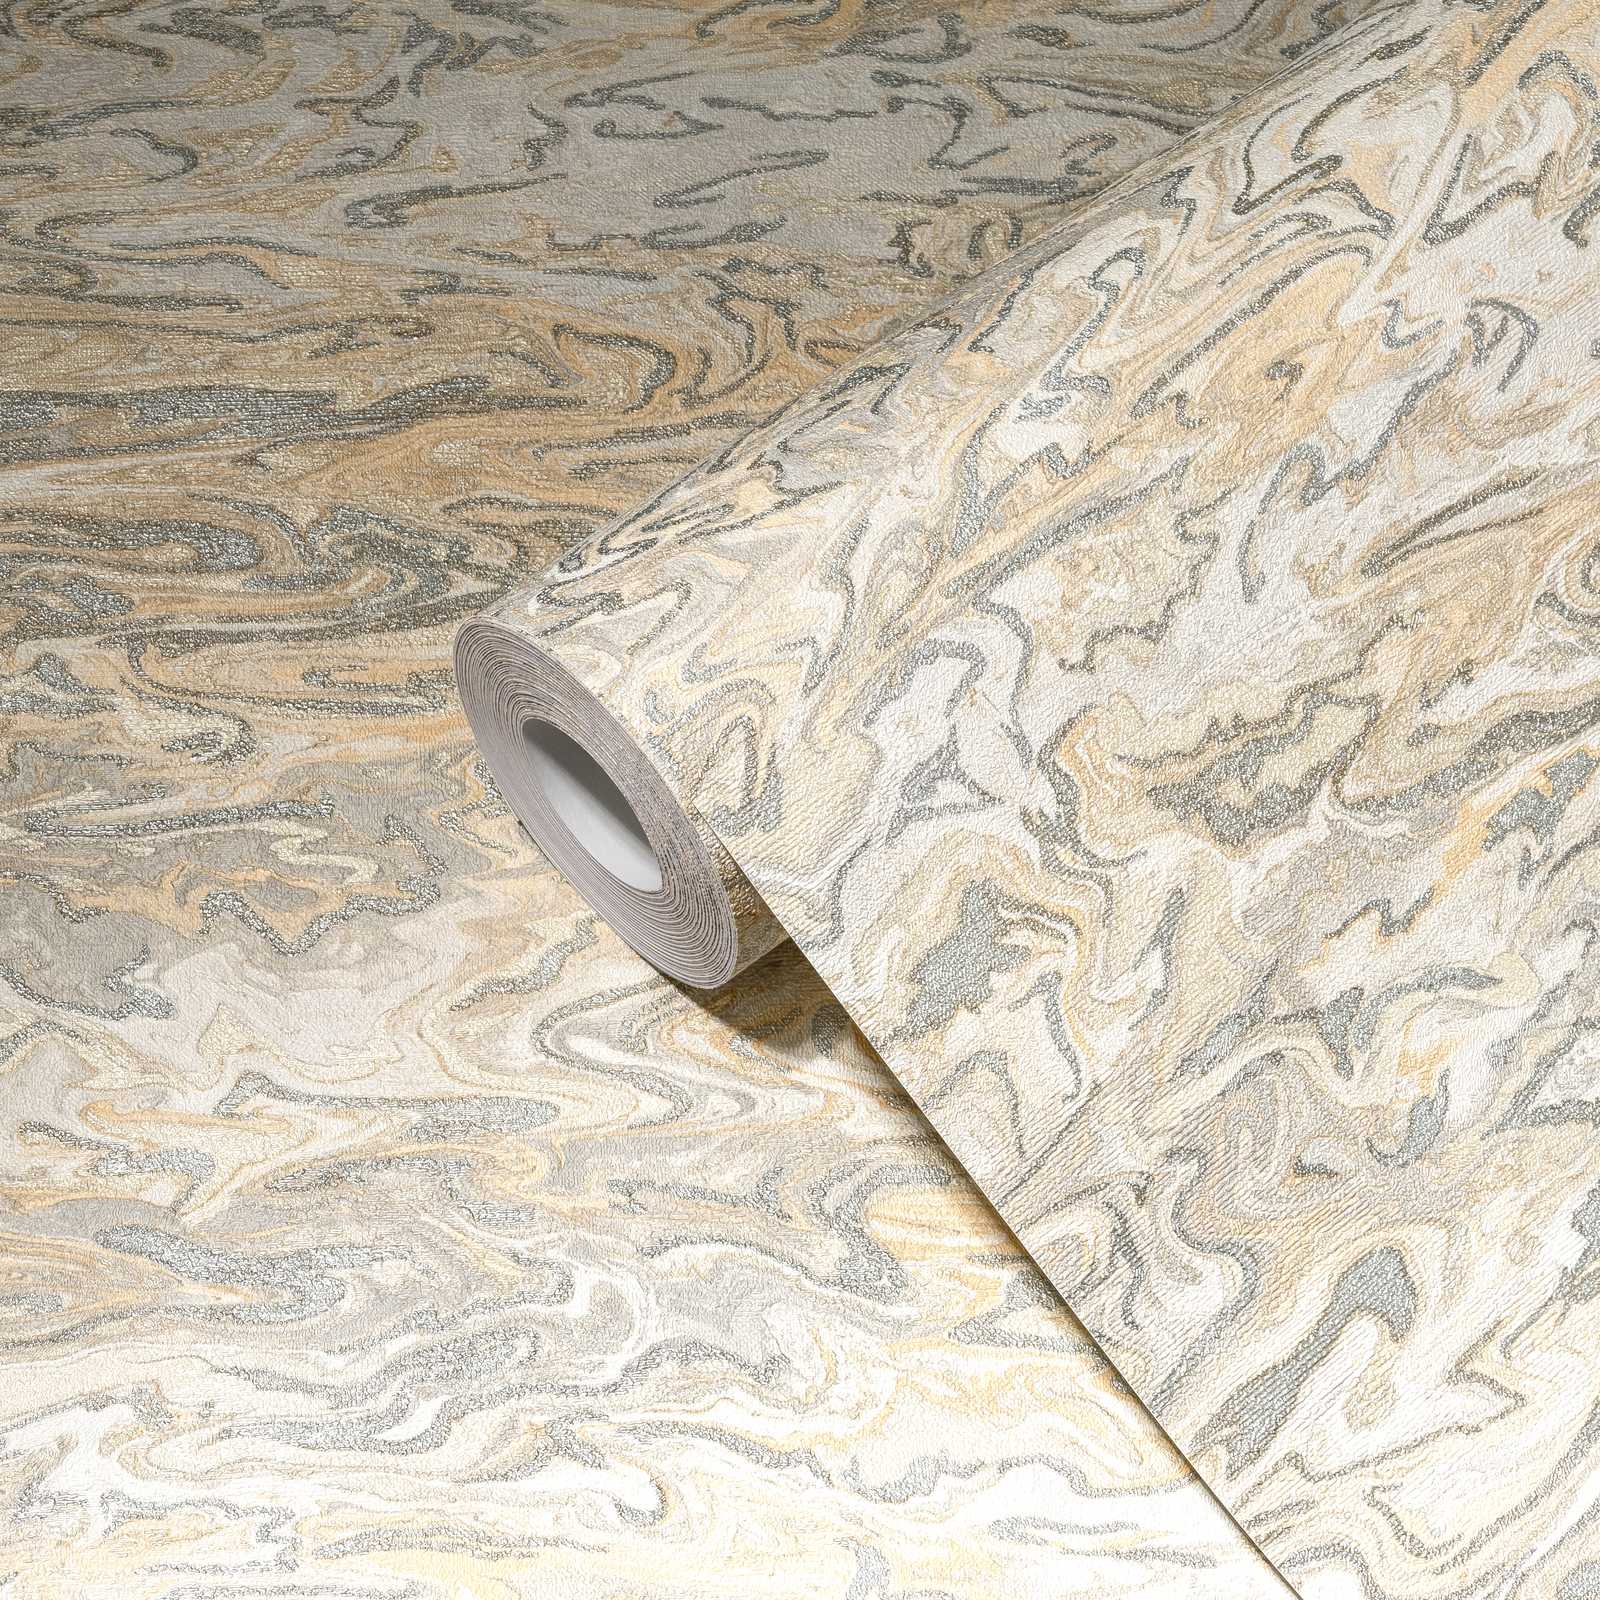             Carta da parati marmorizzata dal design astratto - beige, grigio, crema
        